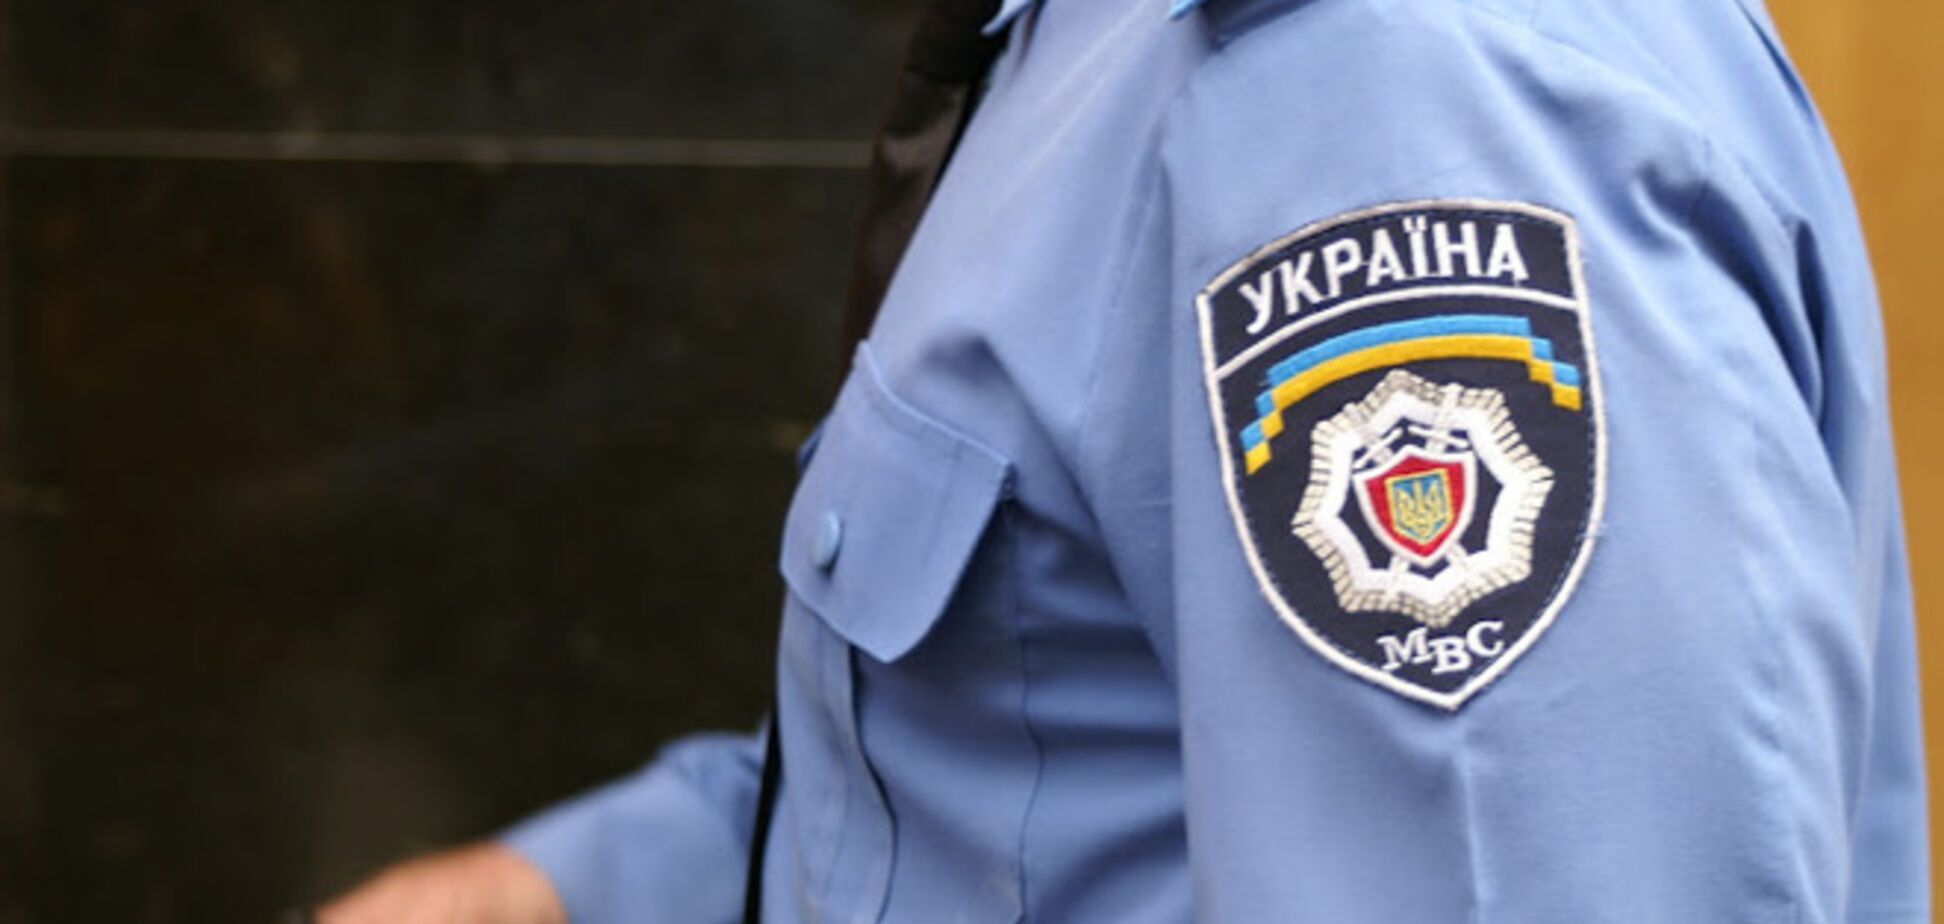 На Донбассе взяли под стражу начальника райотдела милиции из-за поддержки сепаратистов